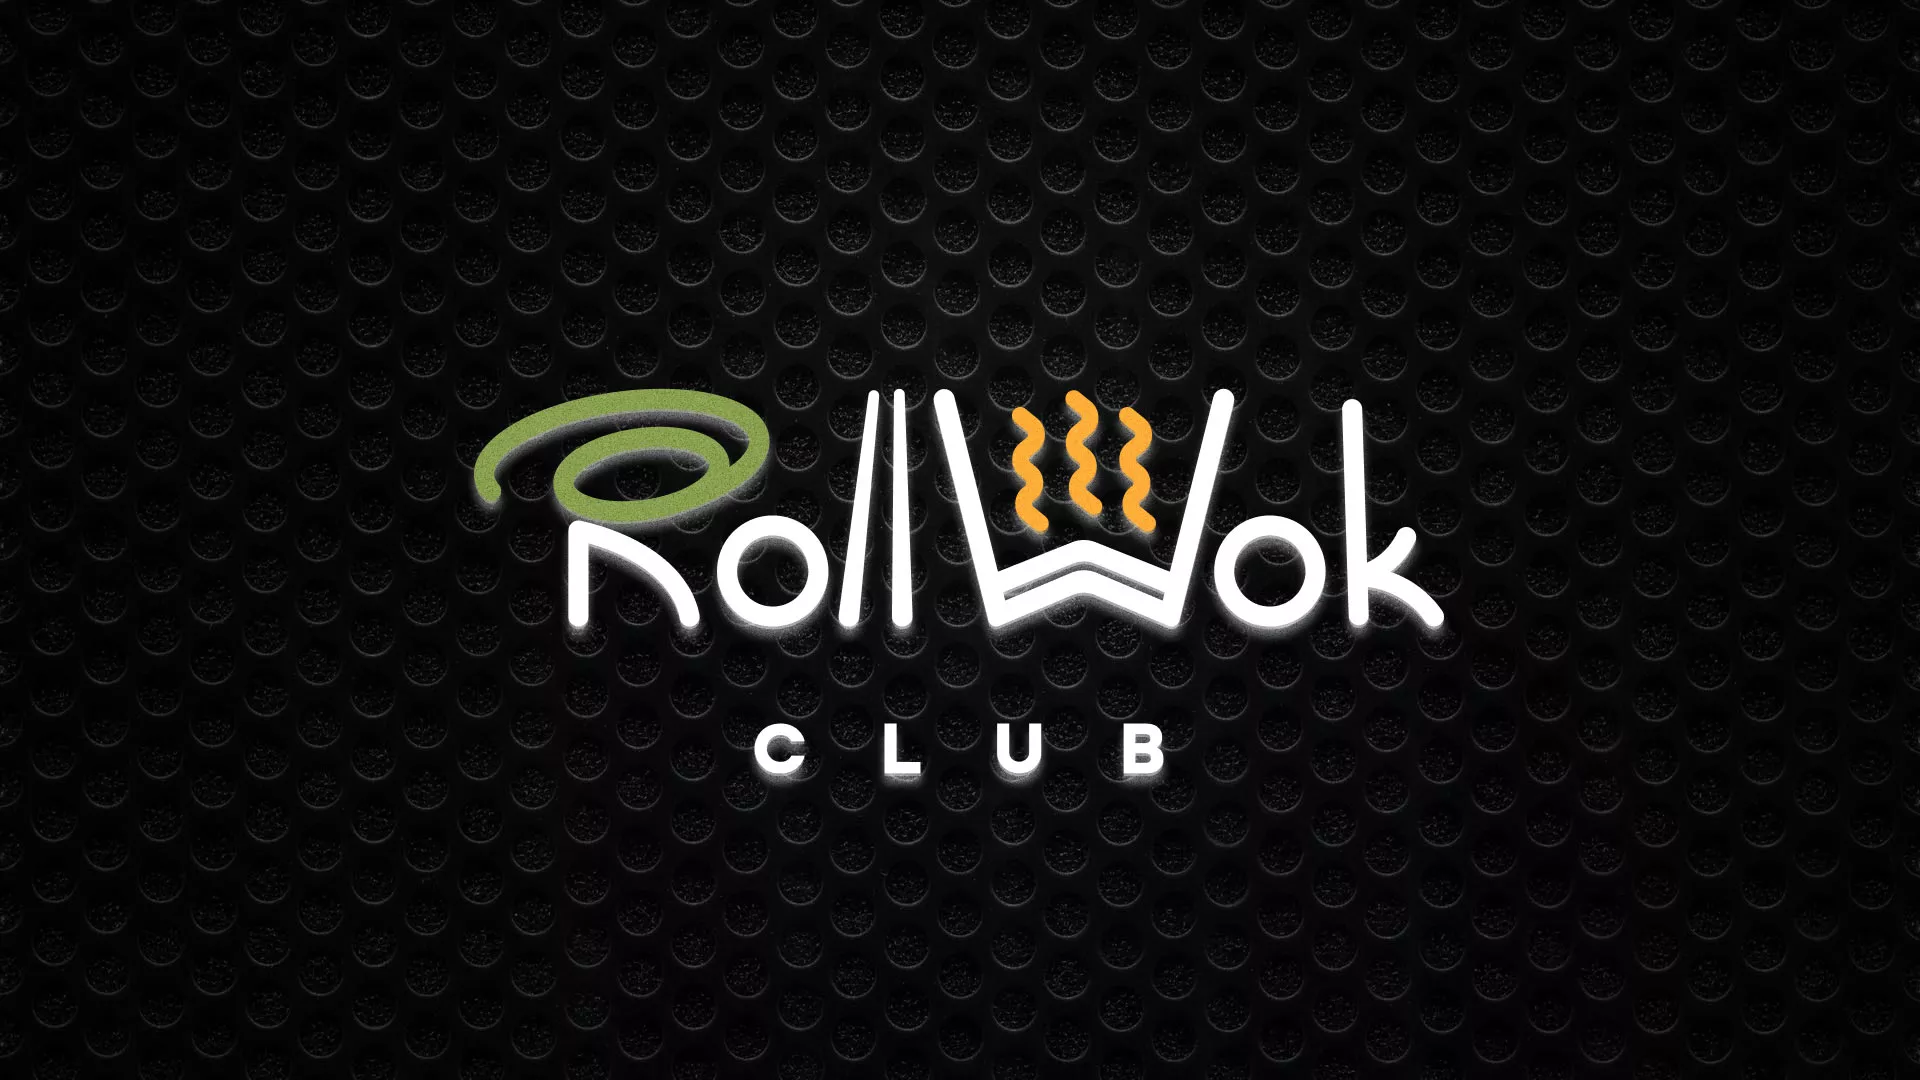 Брендирование торговых точек суши-бара «Roll Wok Club» в Одинцово